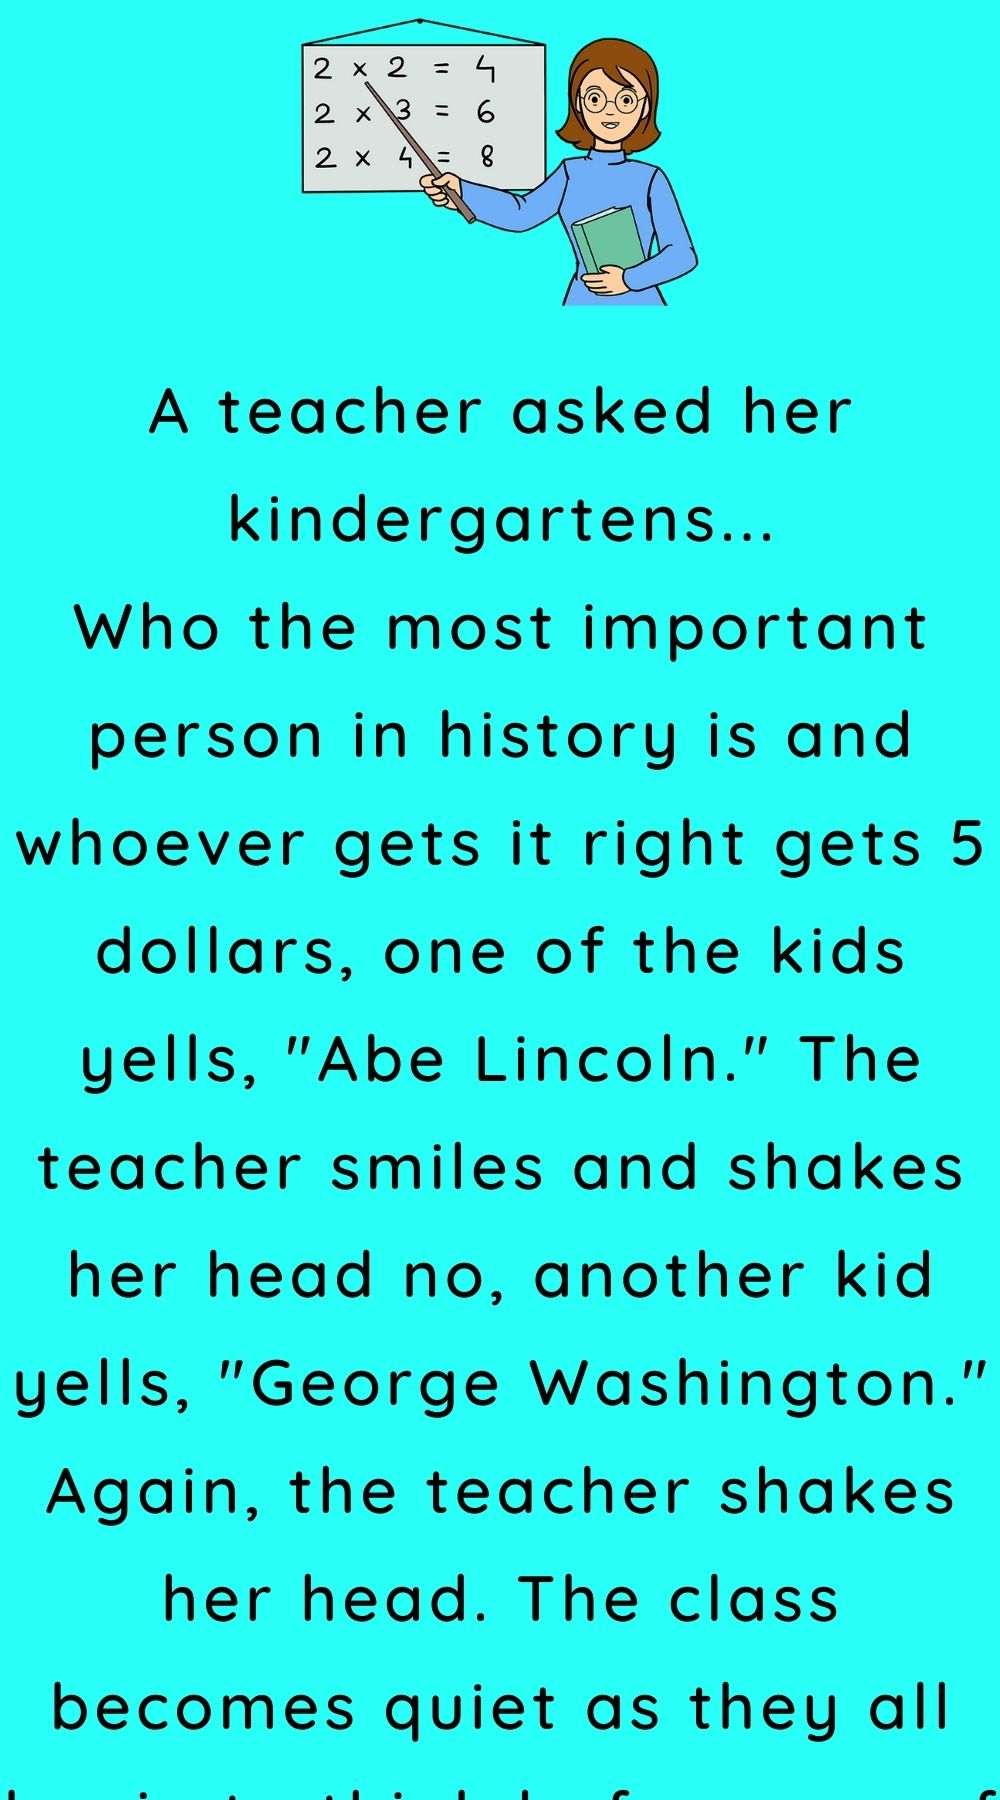 A teacher asked her kindergartens